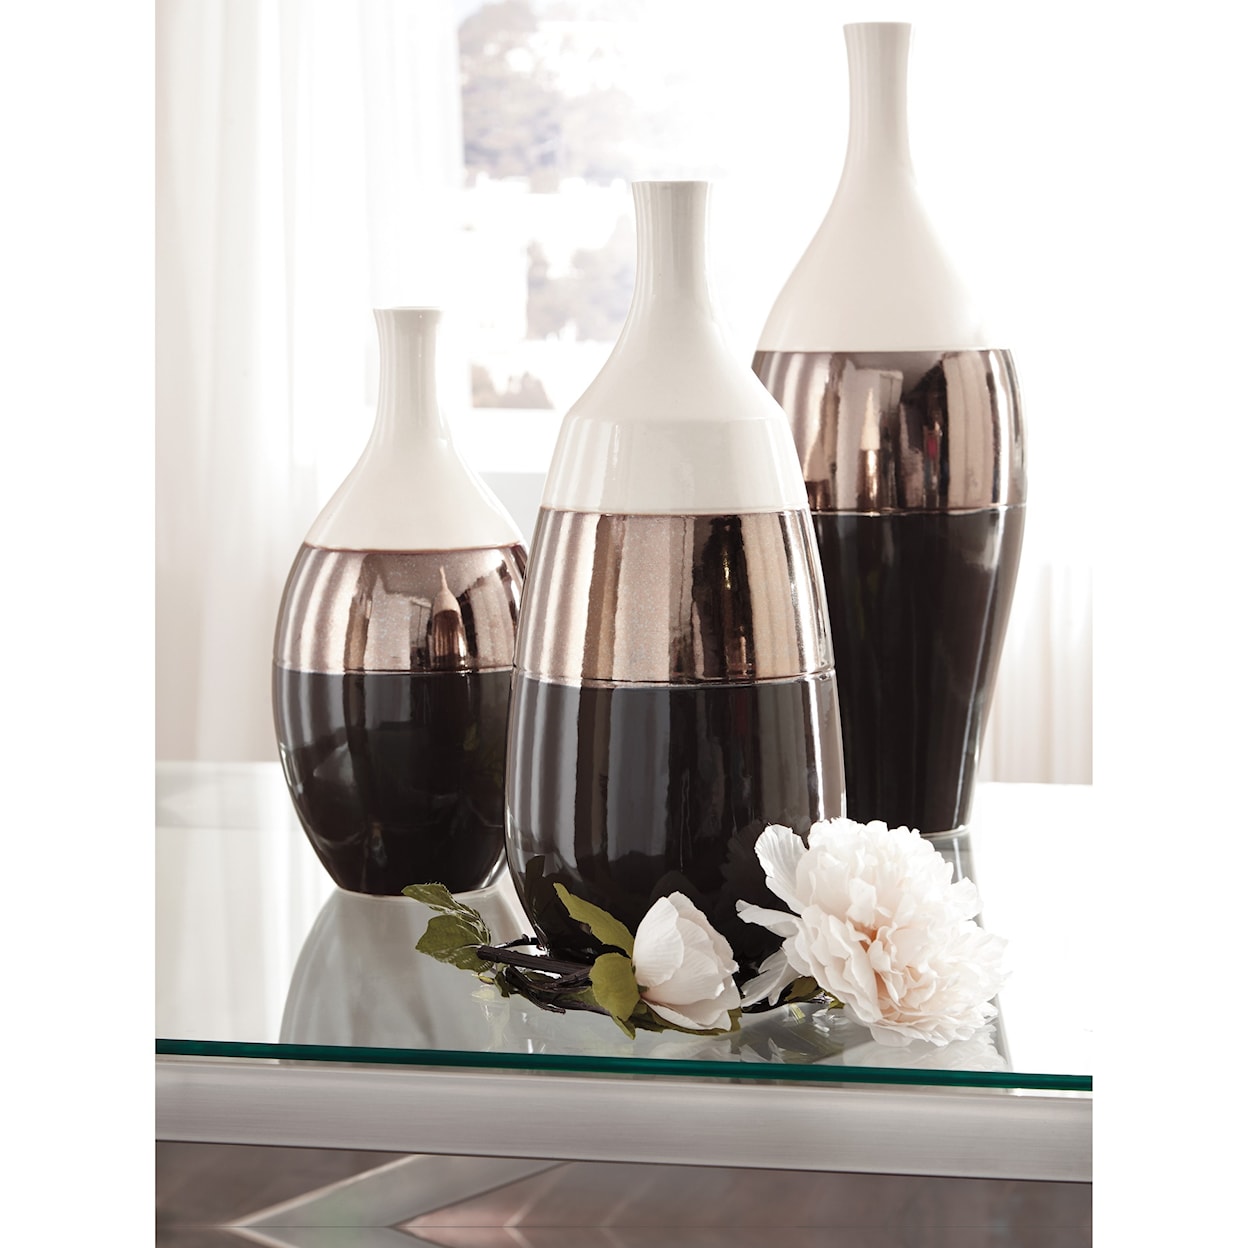 Ashley Furniture Signature Design Accents Dericia Brown/Cream Vase